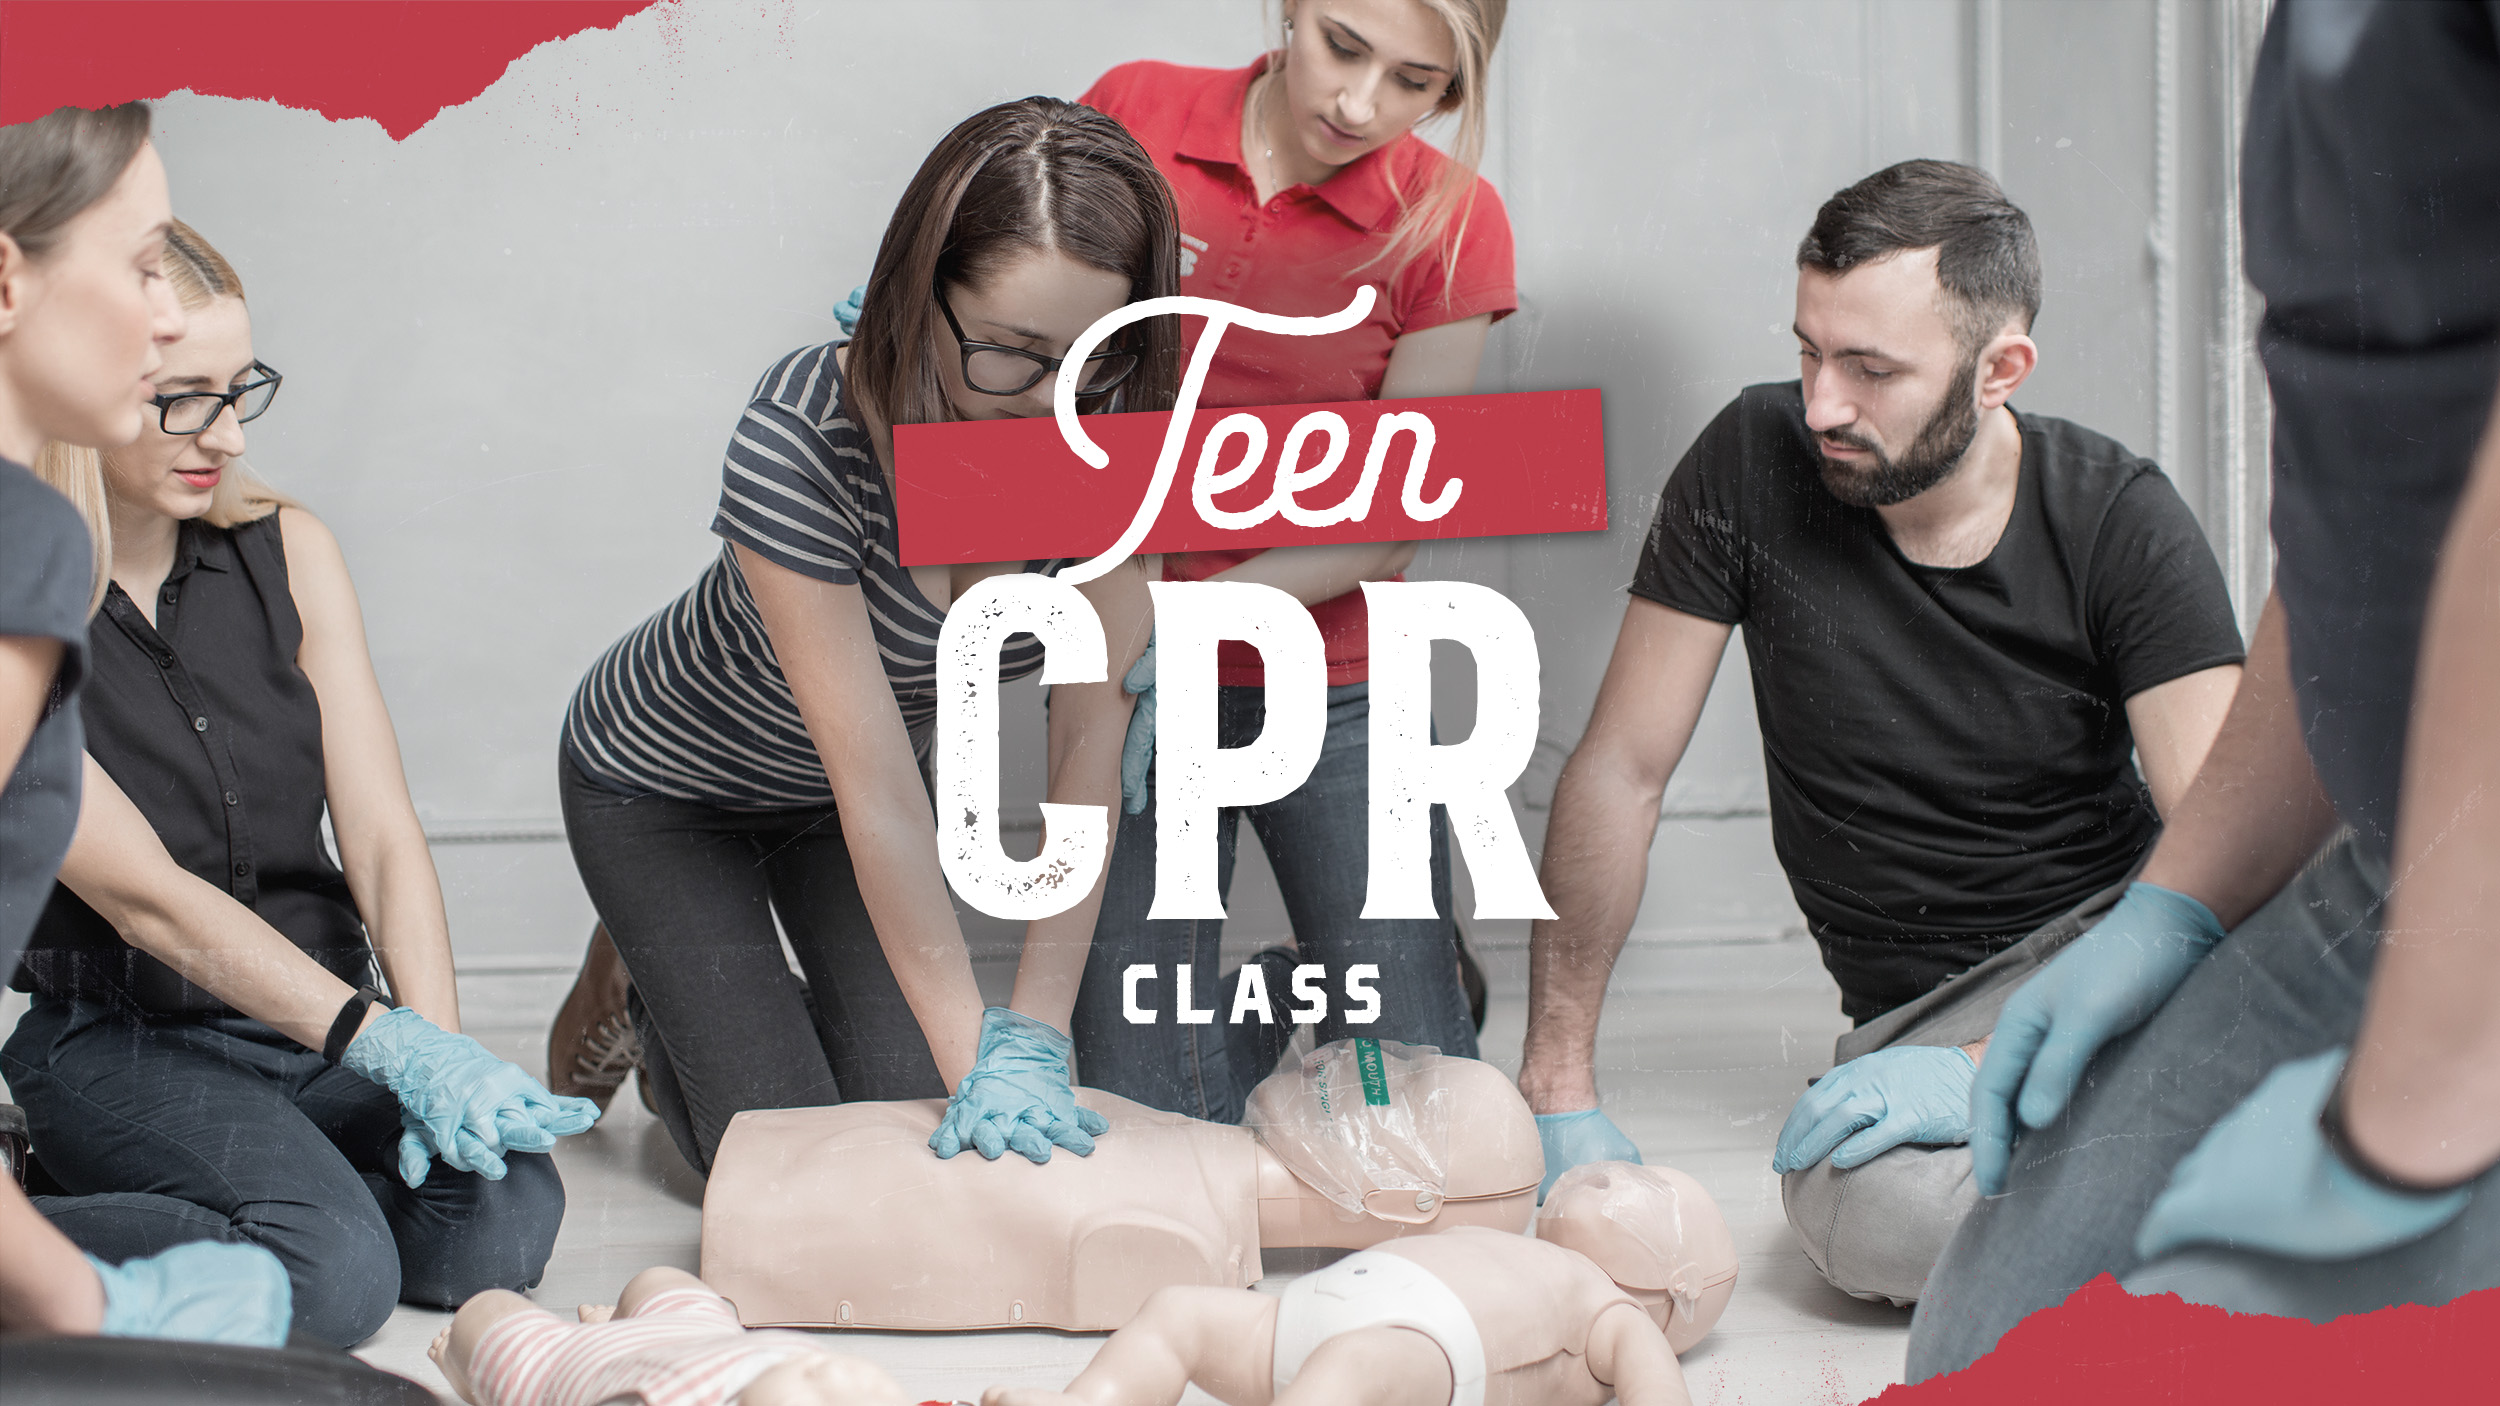 20 Teens Now CPR Certified